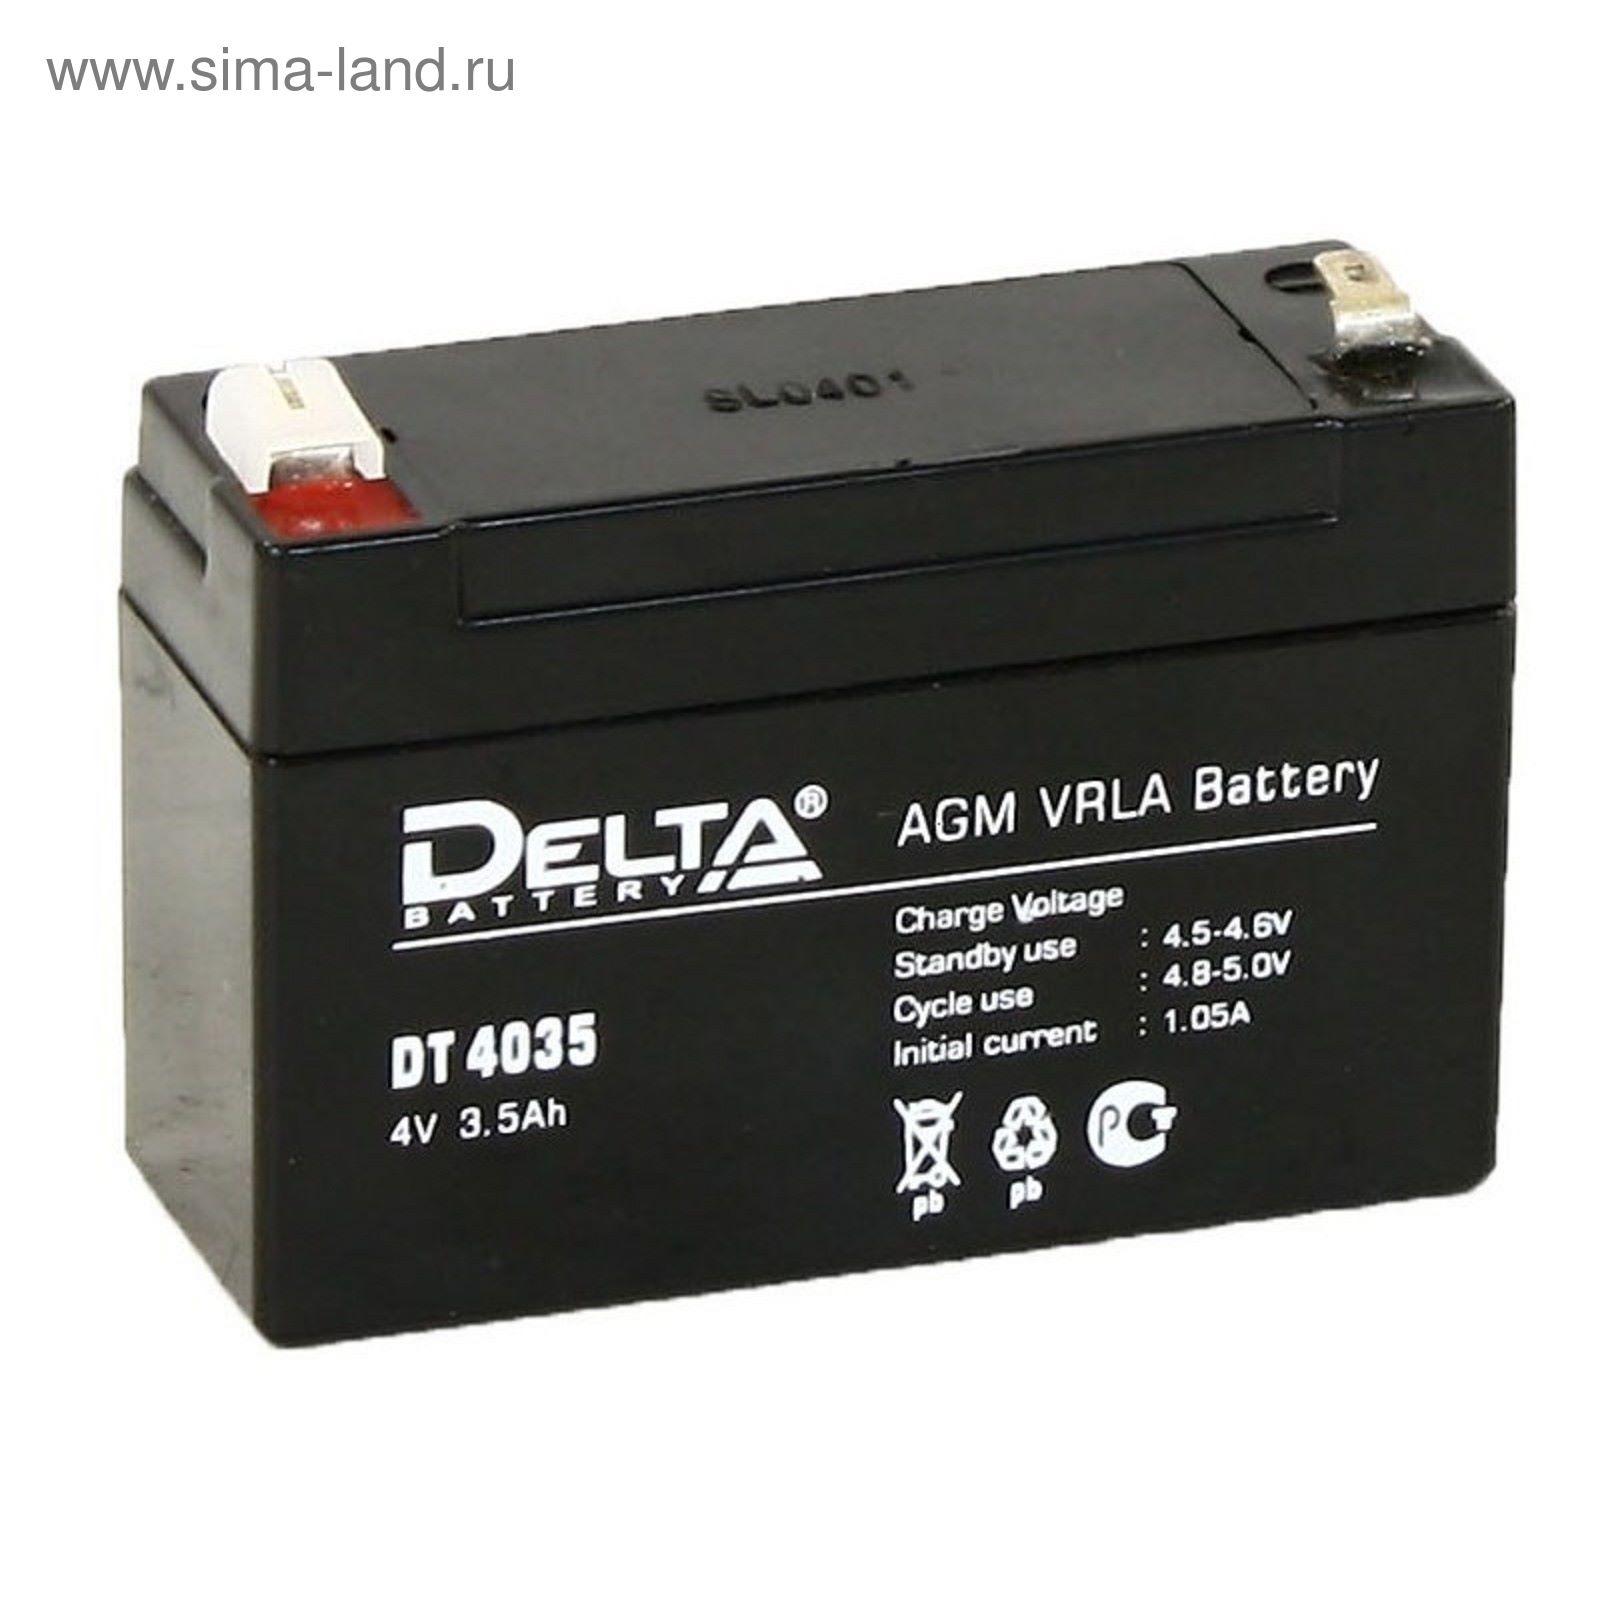 Аккумулятор 12в 4ач. Delta DT 4035 (4в/3.5Ач). Батарея для ИБП Delta DT 6033. Аккумуляторная батарея Delta DT 4035. Аккумулятор Delta 4 Ач.